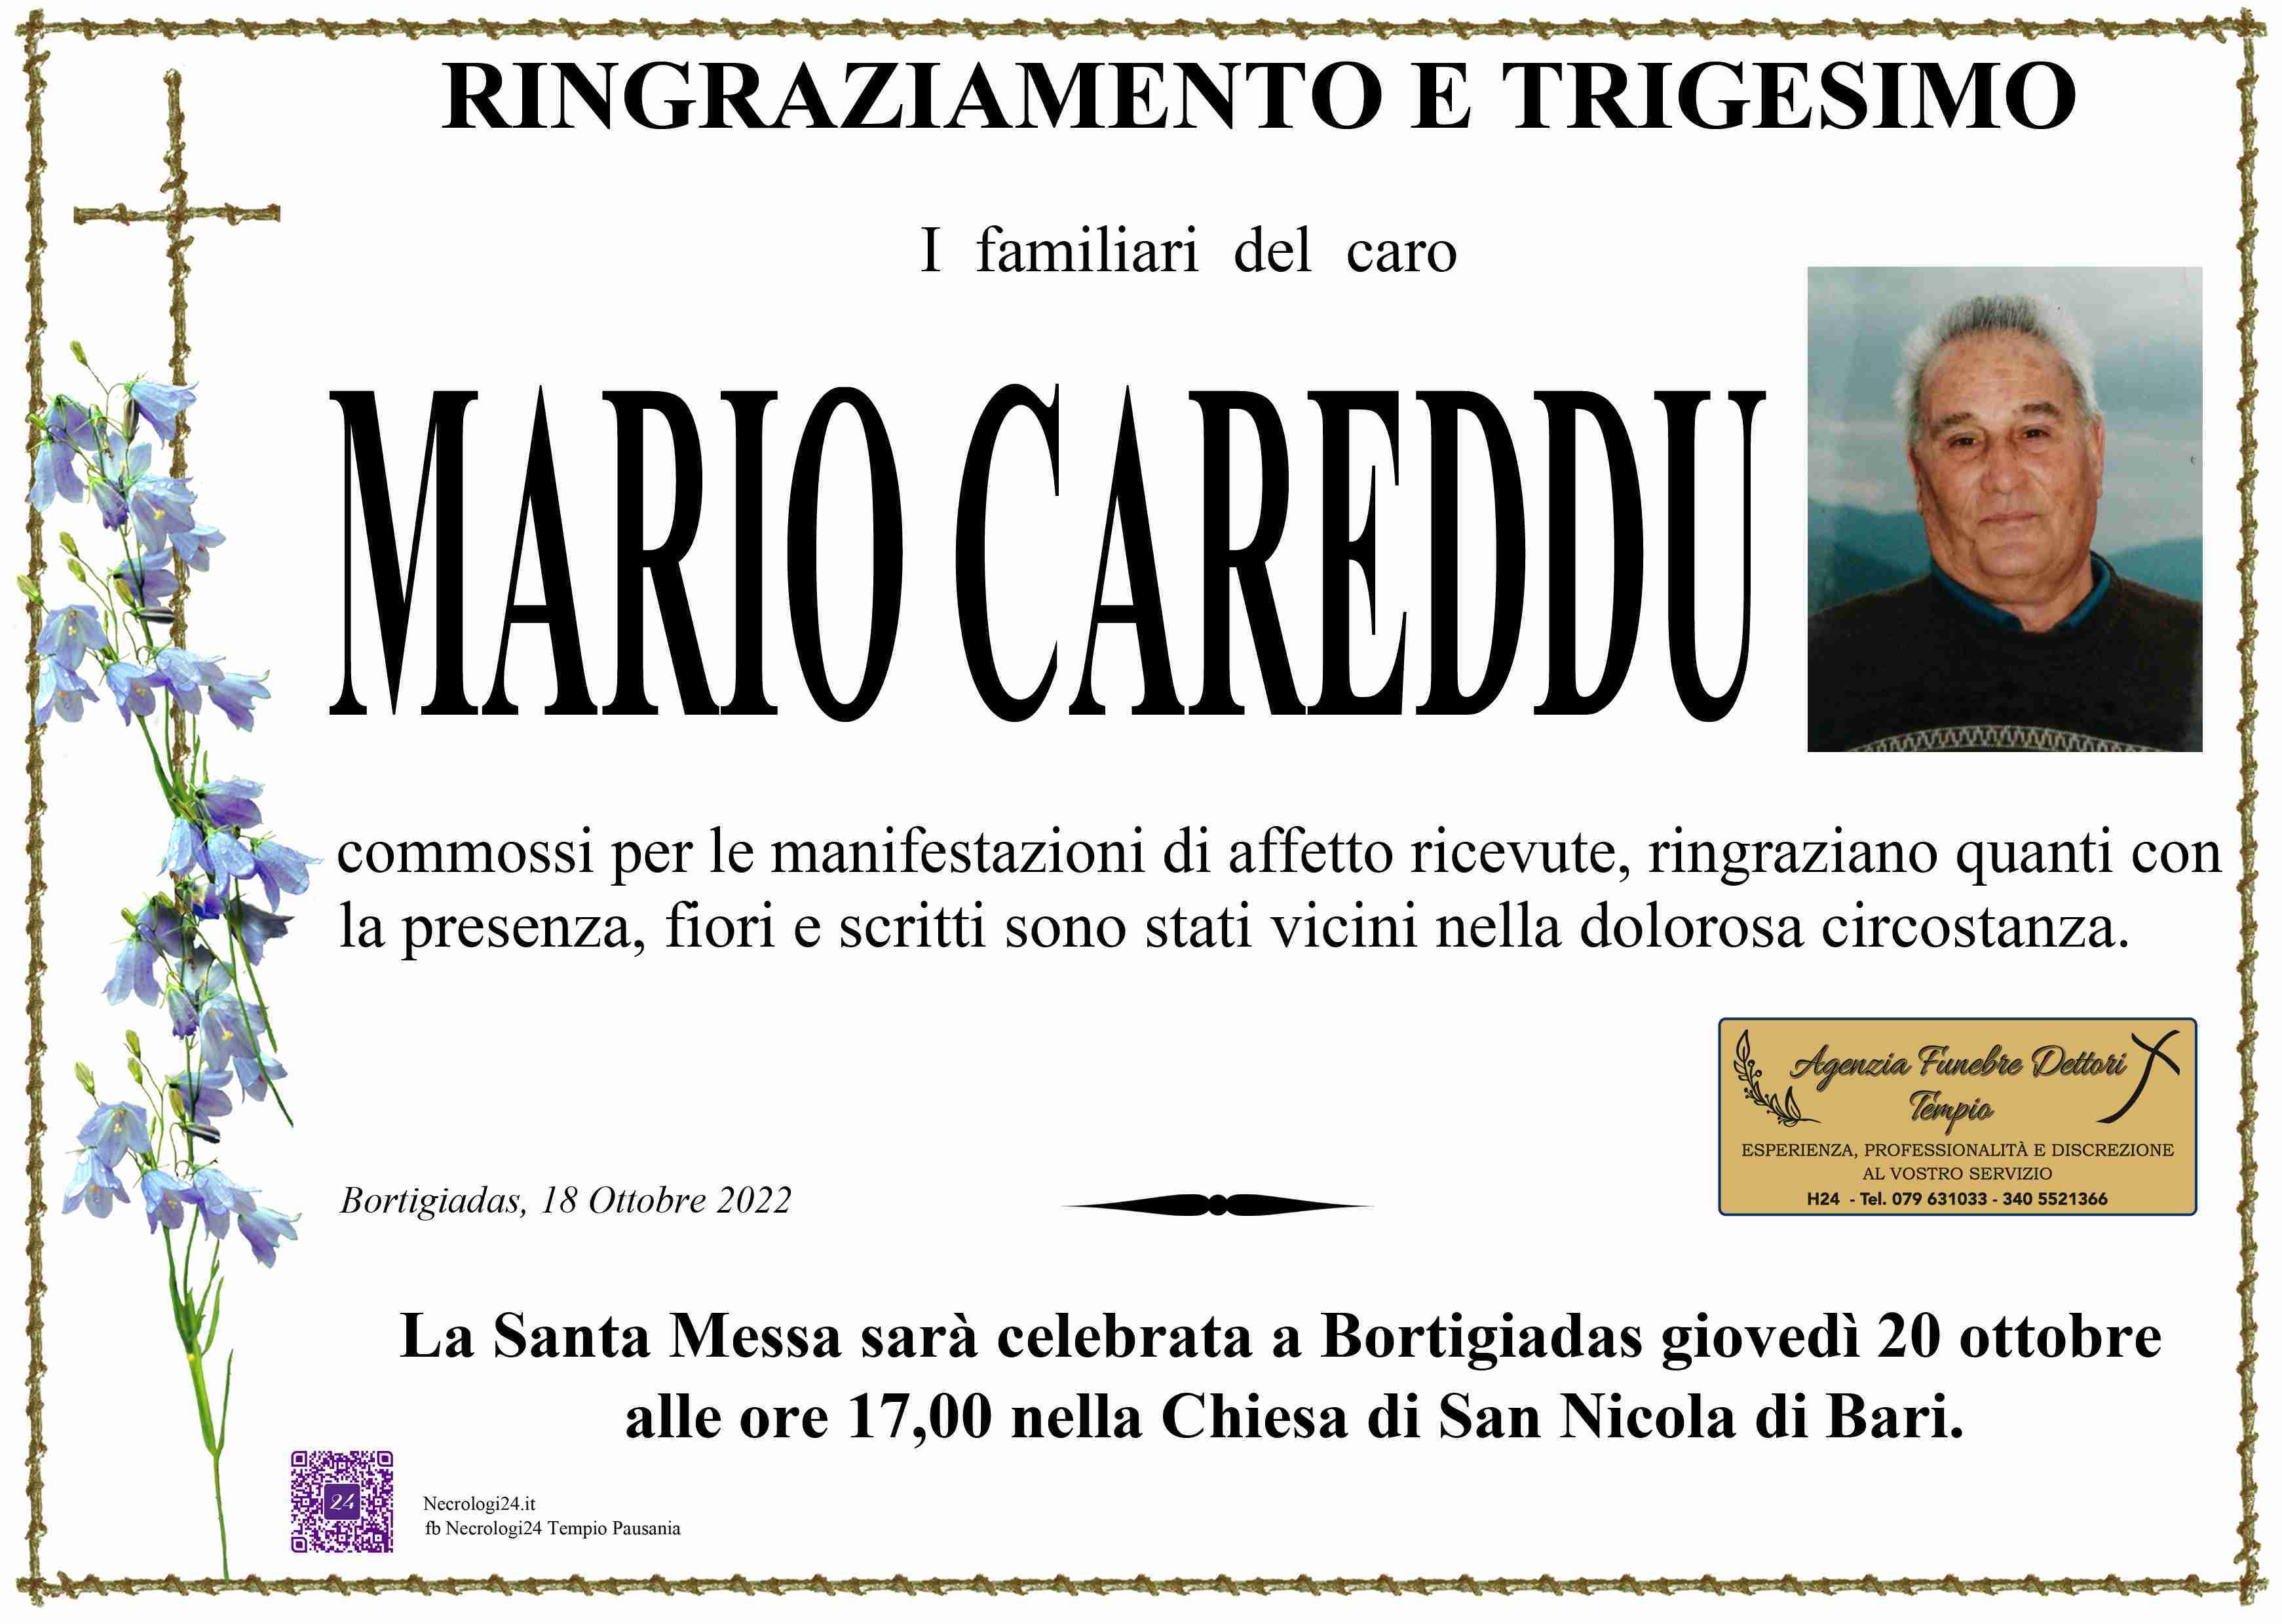 Mario Careddu